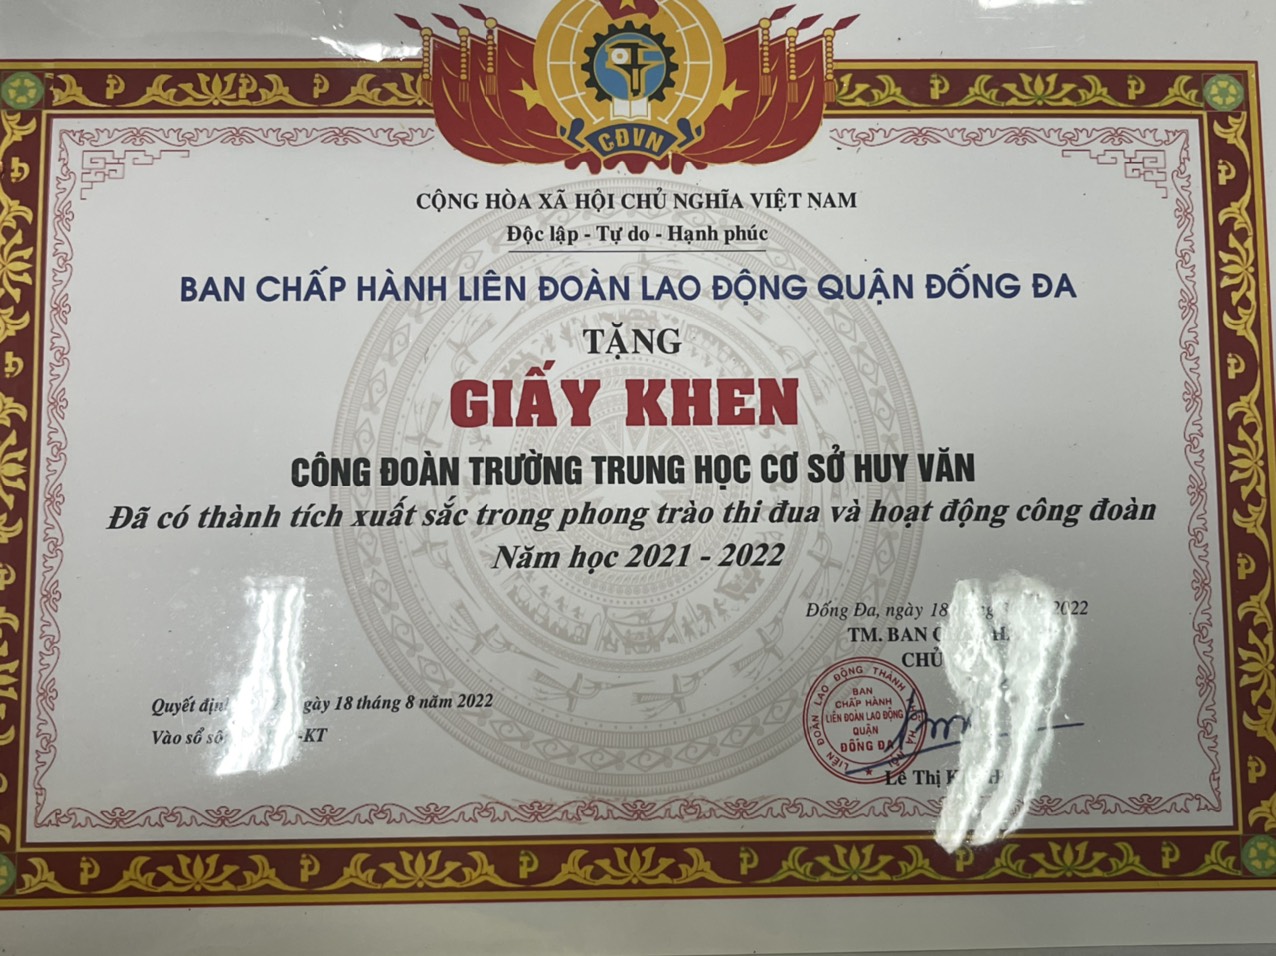 Chúc mừng Công đoàn trường THCS Huy Văn và thầy giáo Phạm Văn Hải